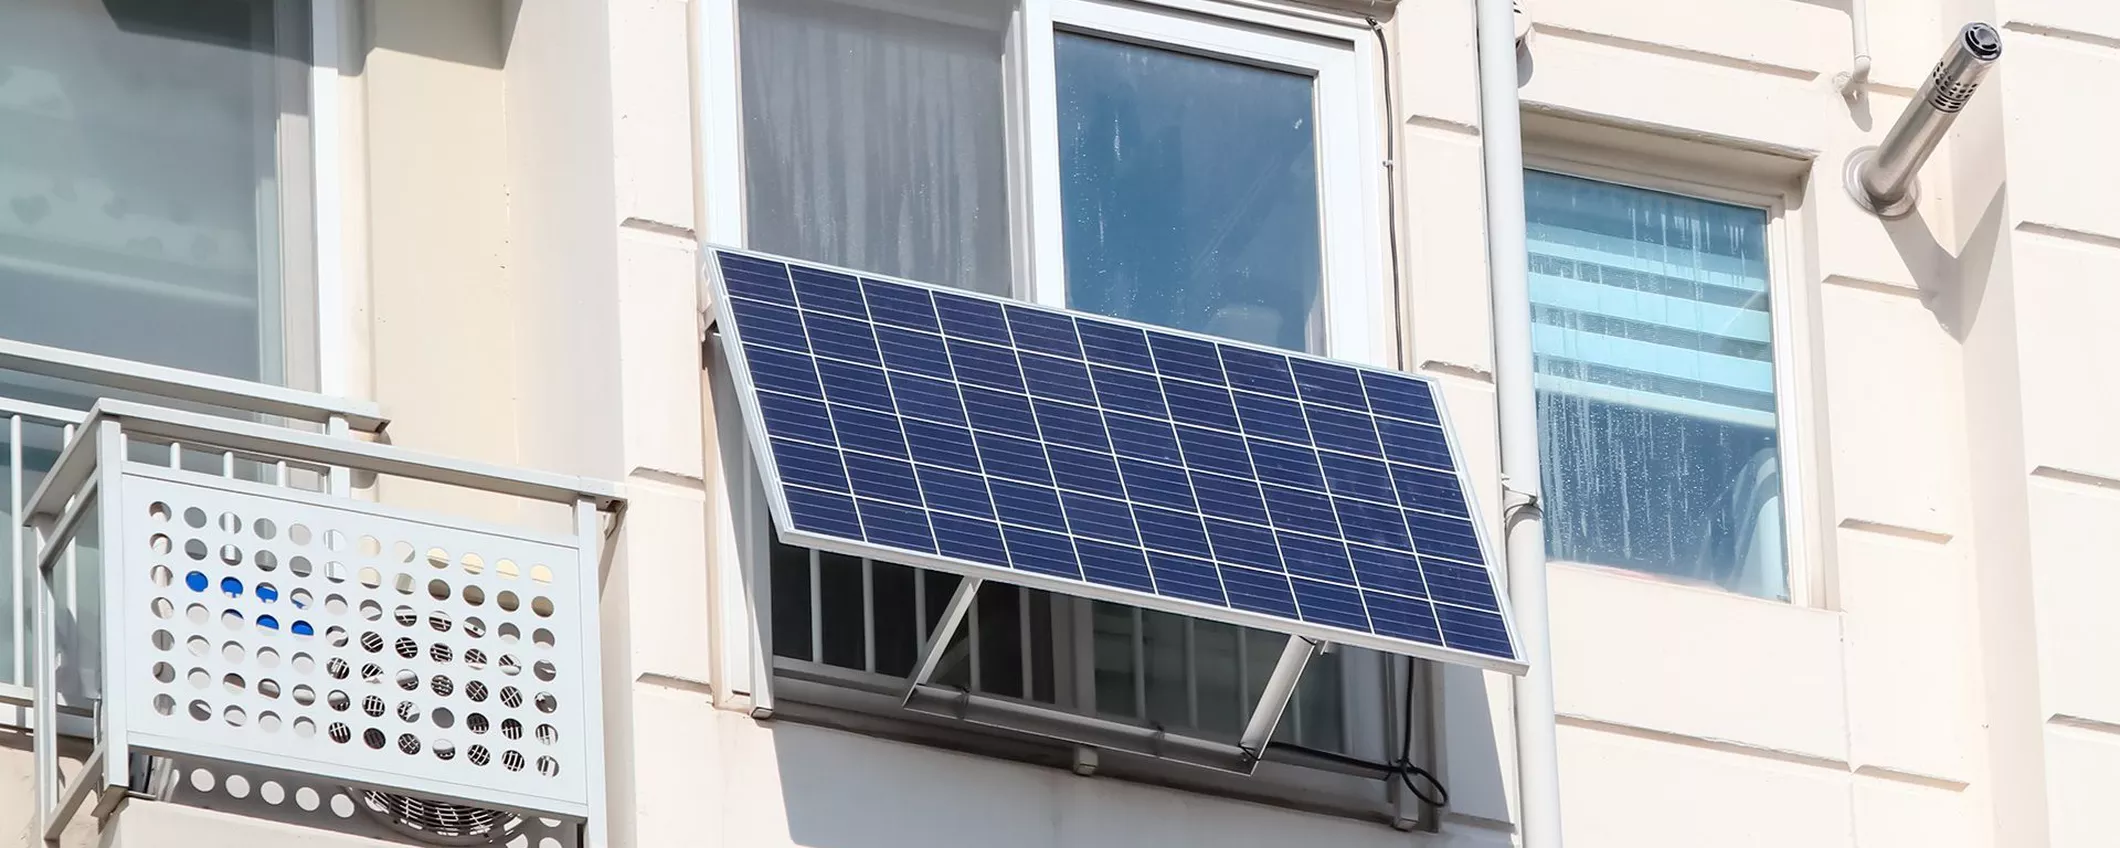 Finalmente in Italia il kit fotovoltaico che ha AIUTATO le famiglie europee a risparmiare